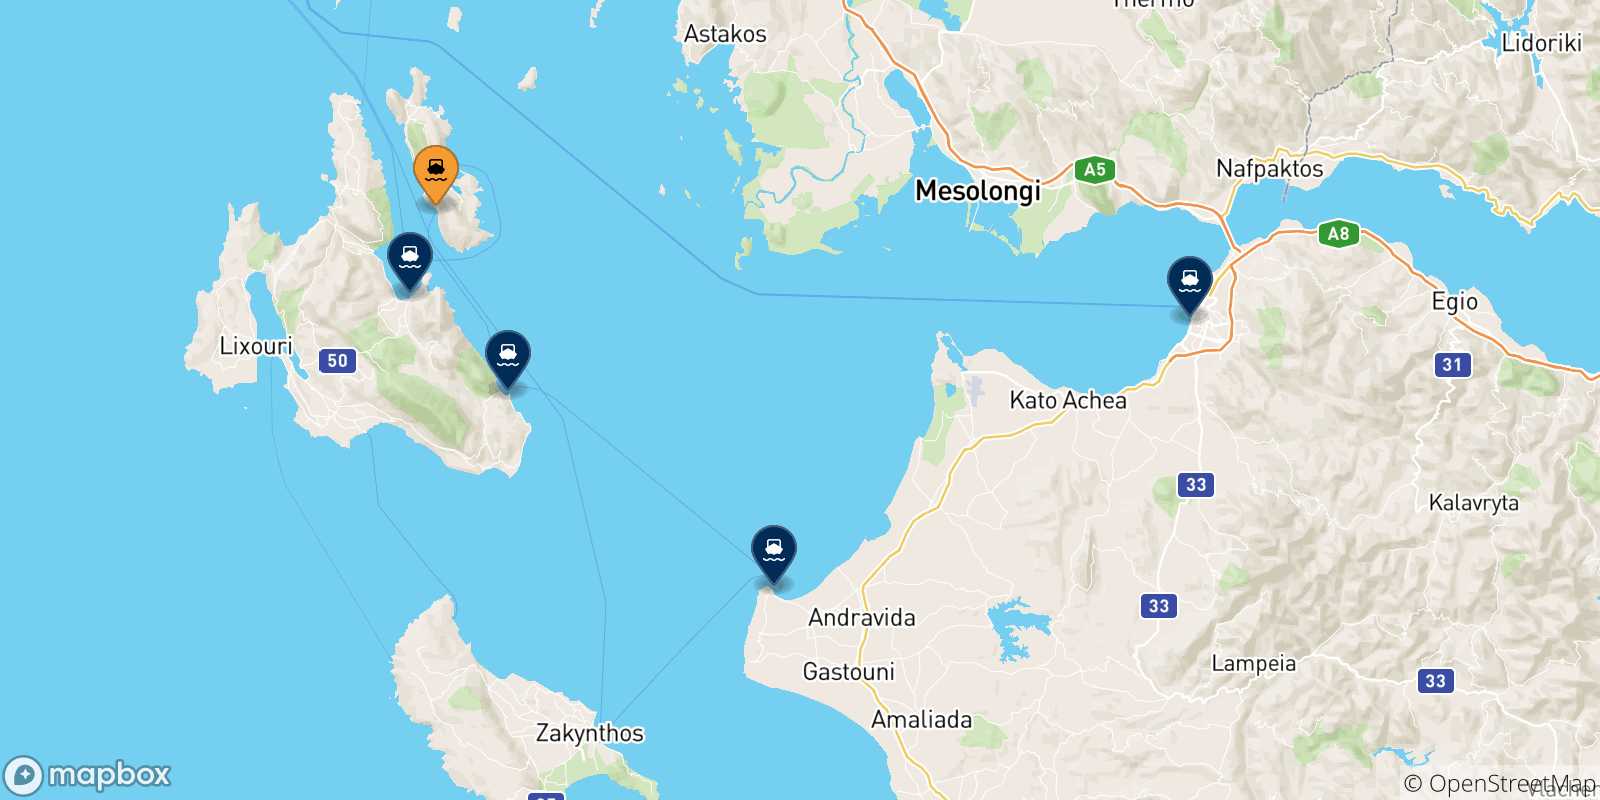 Mappa delle possibili rotte tra Pisaetos (Itaca) e la Grecia